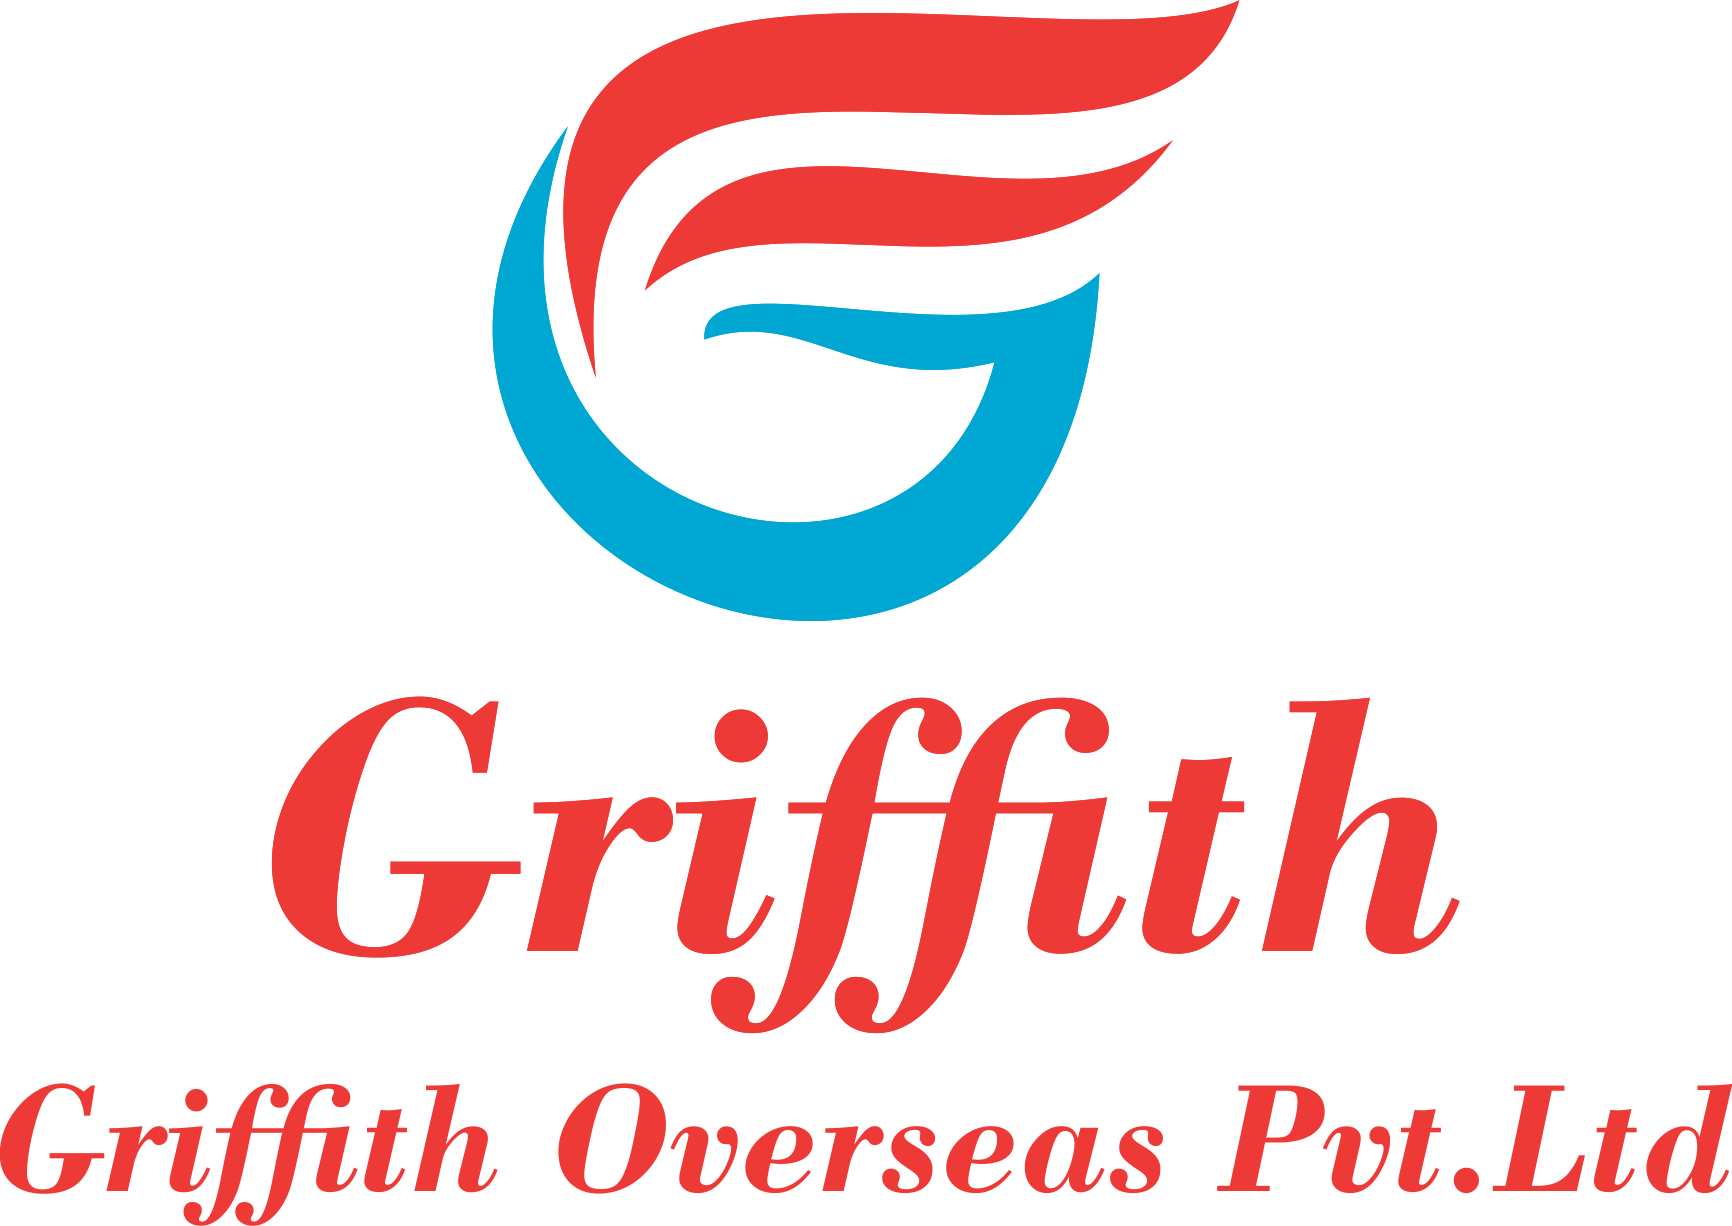 GRIFFITH OVERSEAS PVT. LTD.